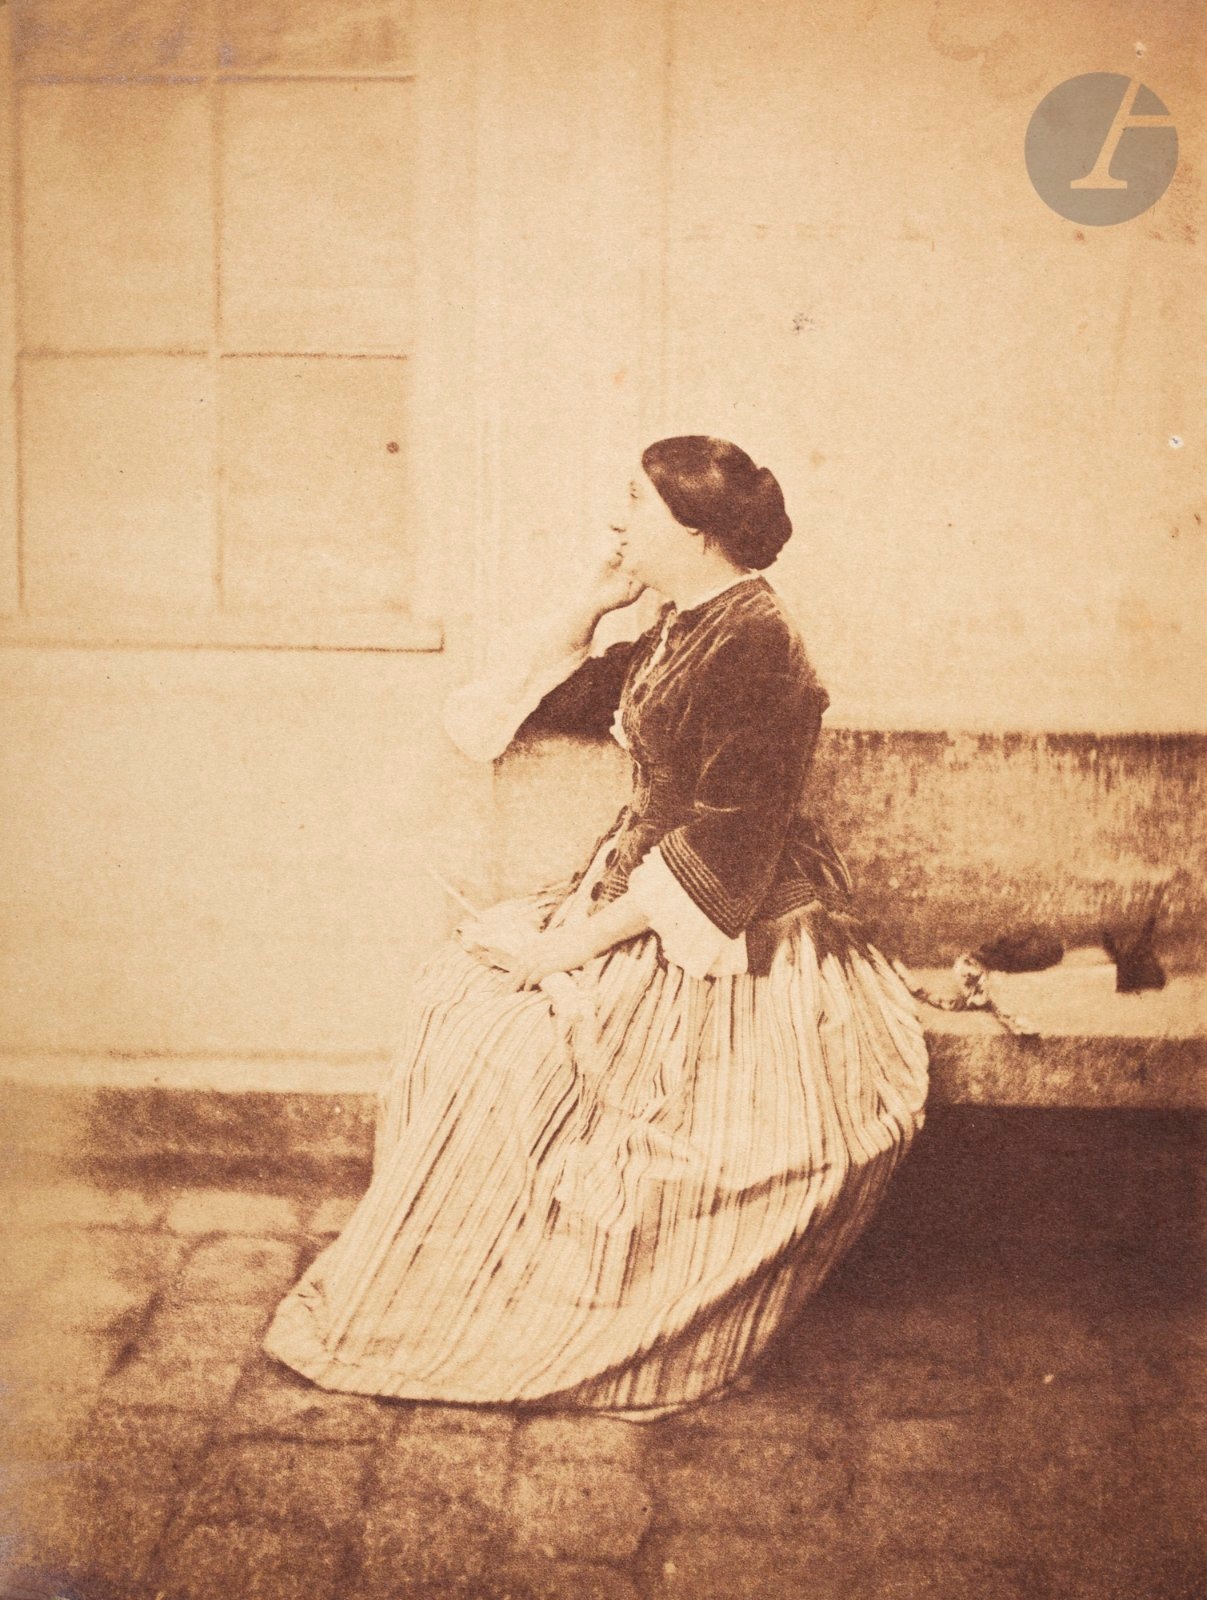 Two Works: Femme assise au 21 quai de Bourbon by Charles Nègre, circa 1852